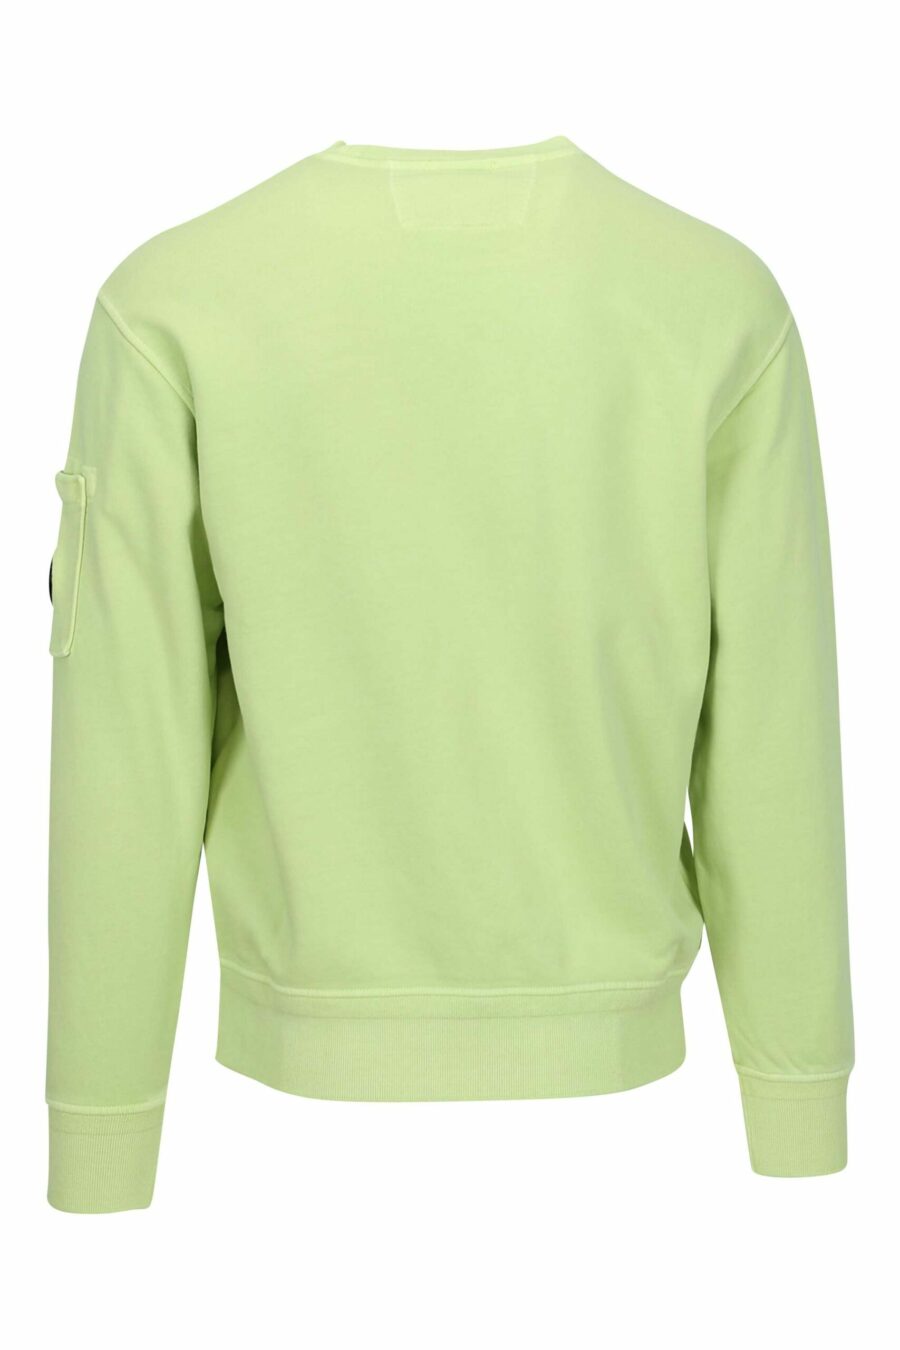 Camisola verde clara com bolso e lente com mini logótipo - 7620943751833 1 à escala